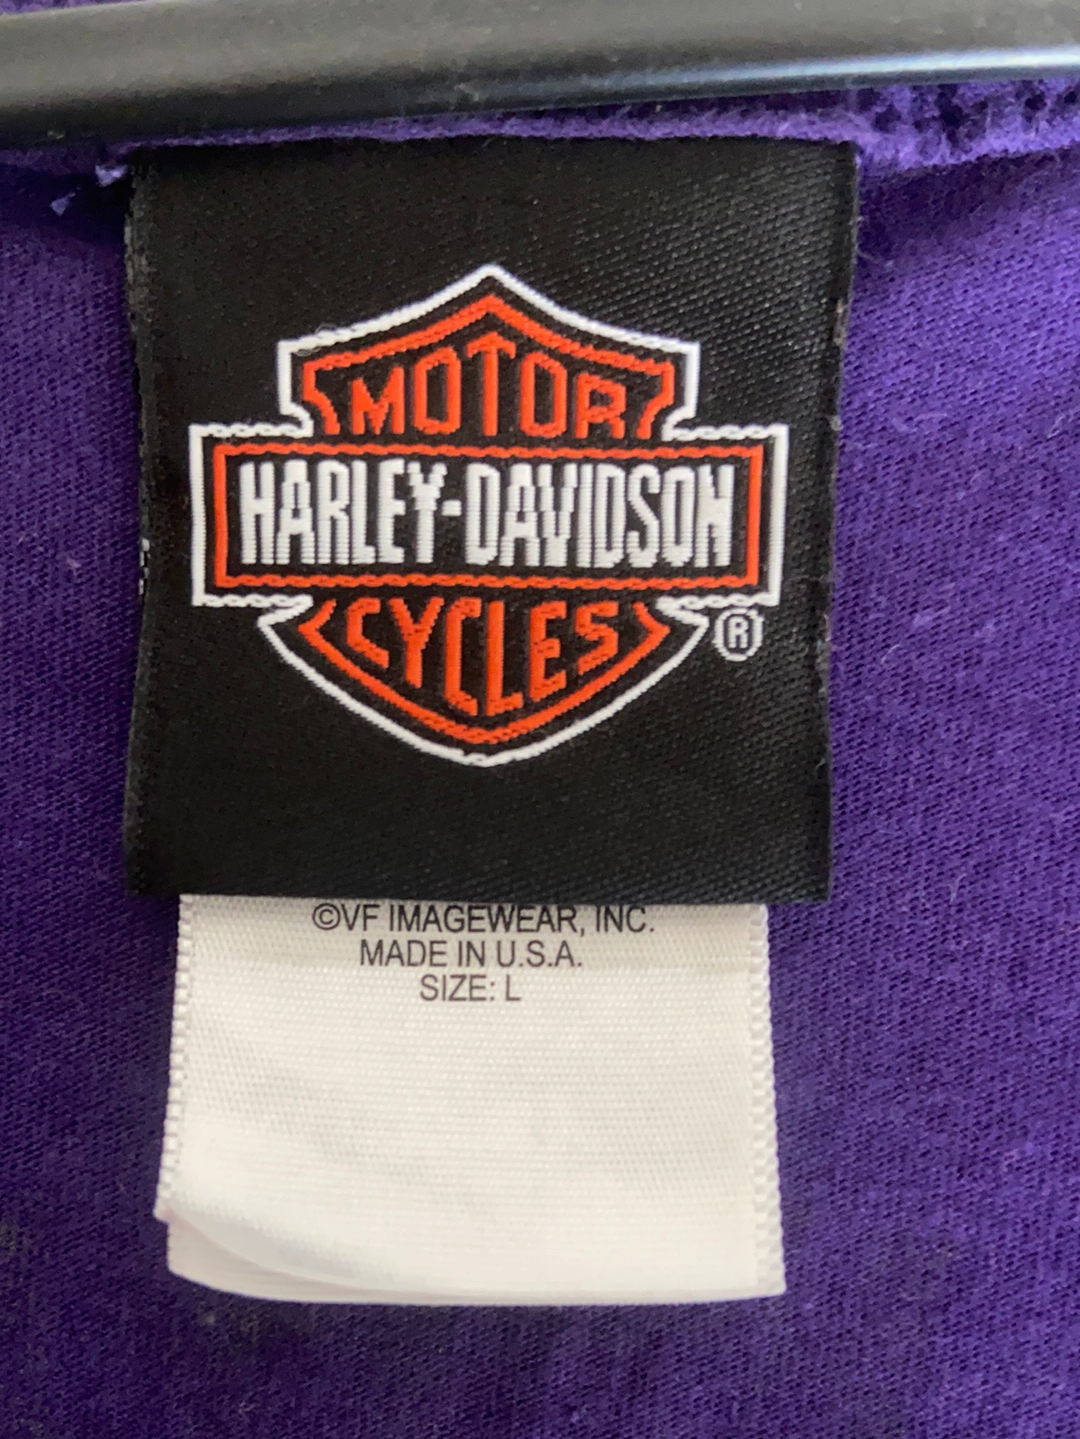 Harley Davidson Tee - Size Large